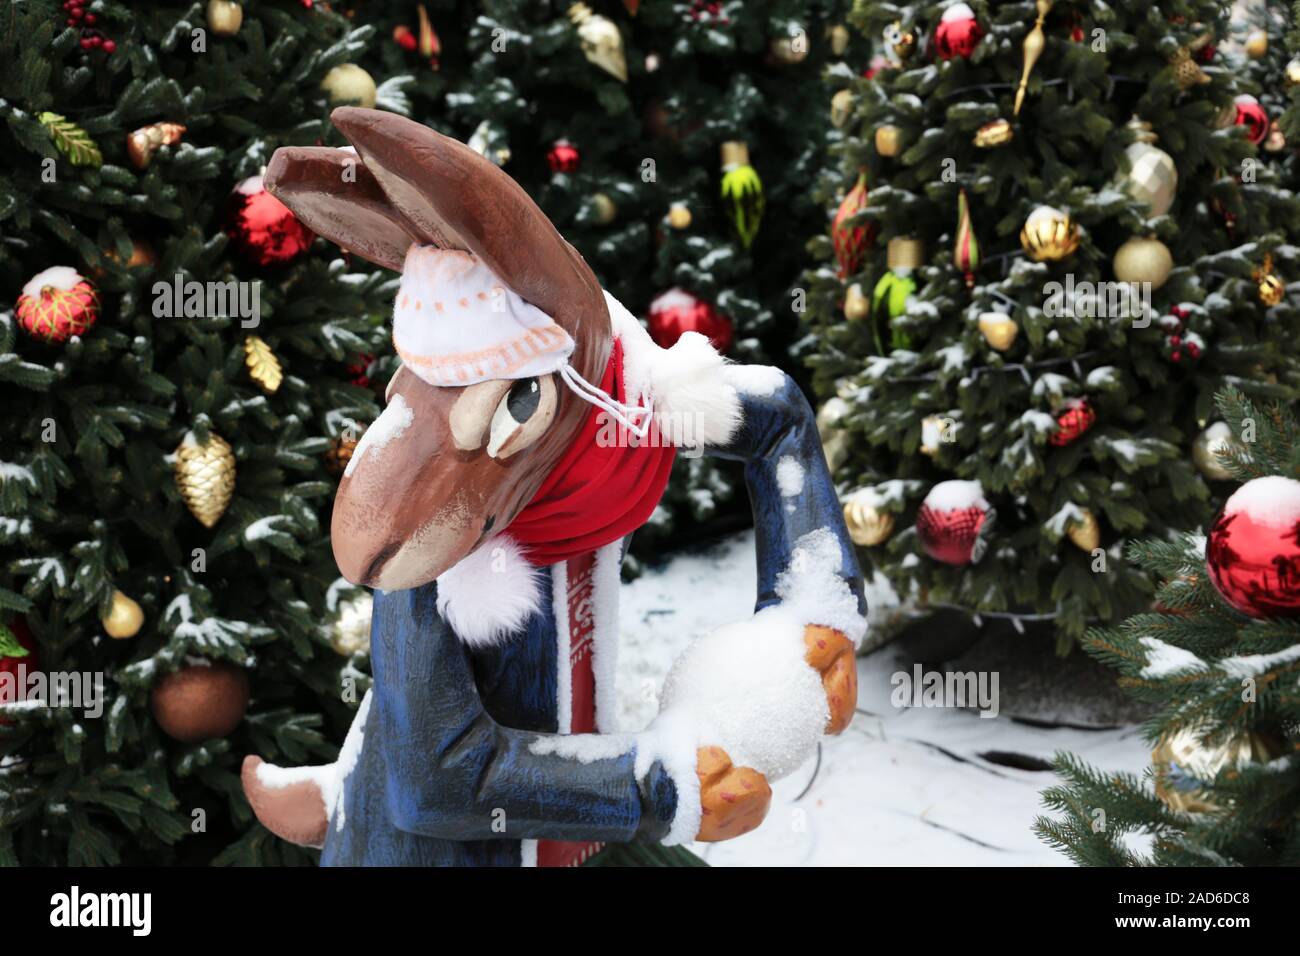 Boule de Noël avec lapin sur une rue d'hiver, le Nouvel An décorations dans la ville. Personnage de conte, maison de vacances, l'humeur de fête magique Banque D'Images